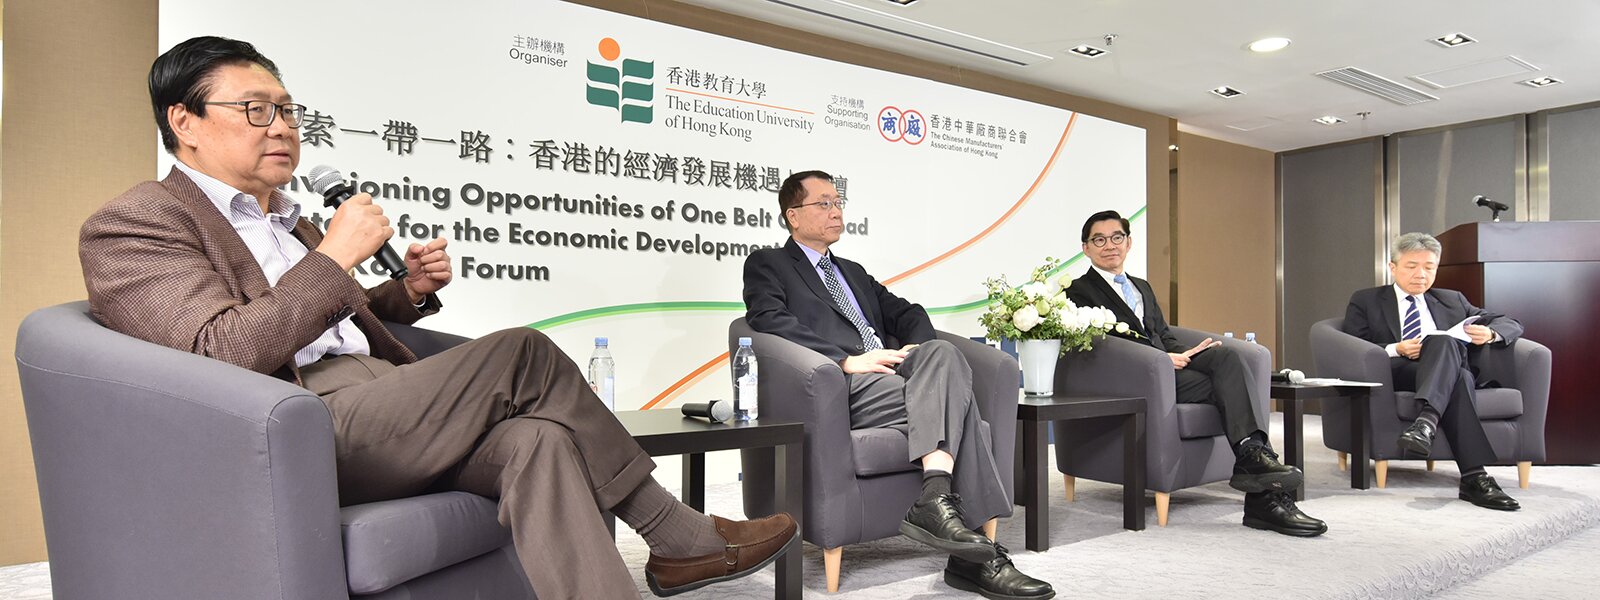 教大论坛探讨一带一路香港发展机遇